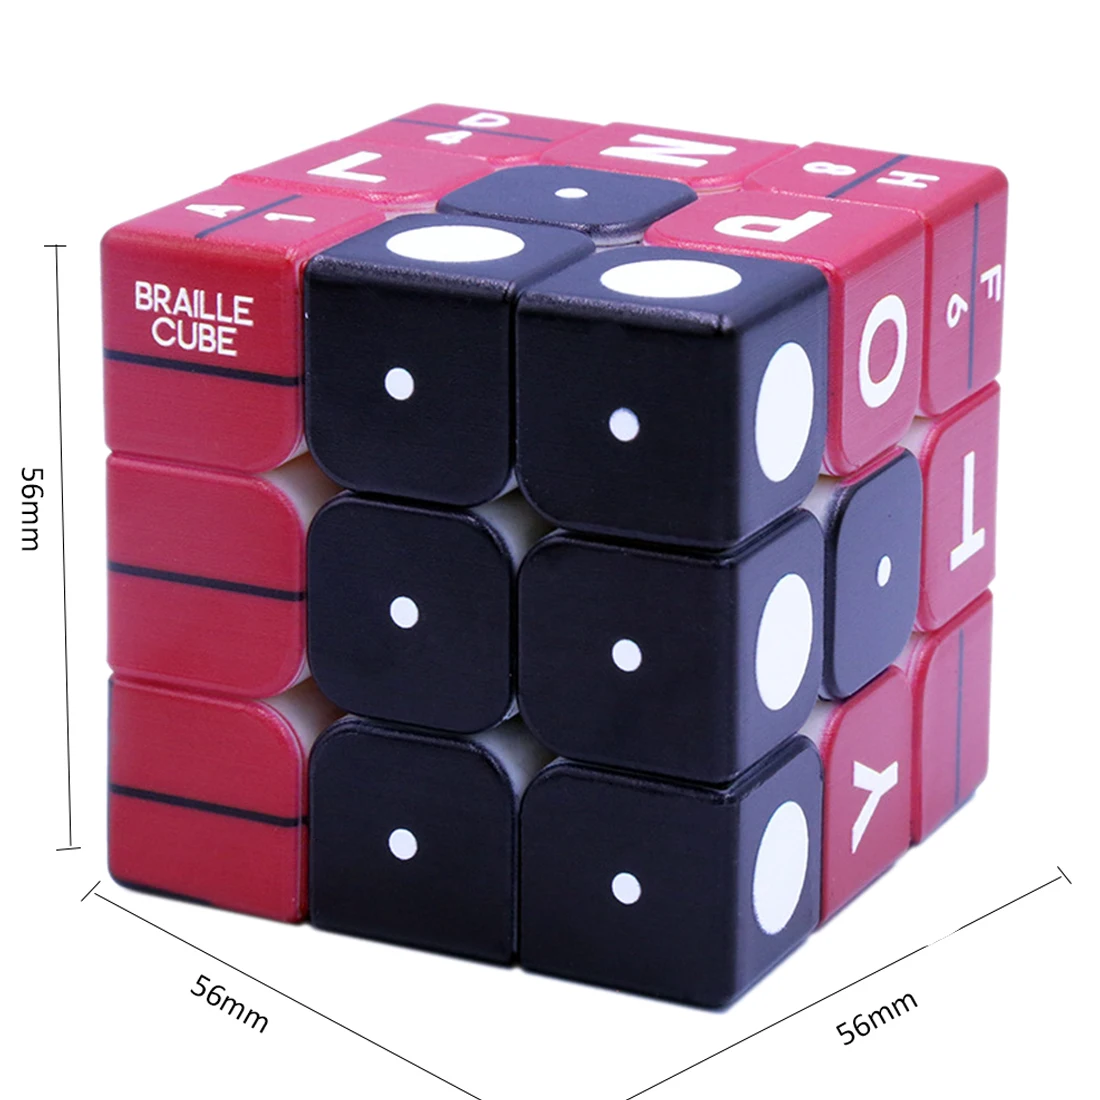 2019 Новое поступление 3x3x3 Braille номер отпечаток пальца эффект магический куб головоломка куб игра для слепых игр подарок